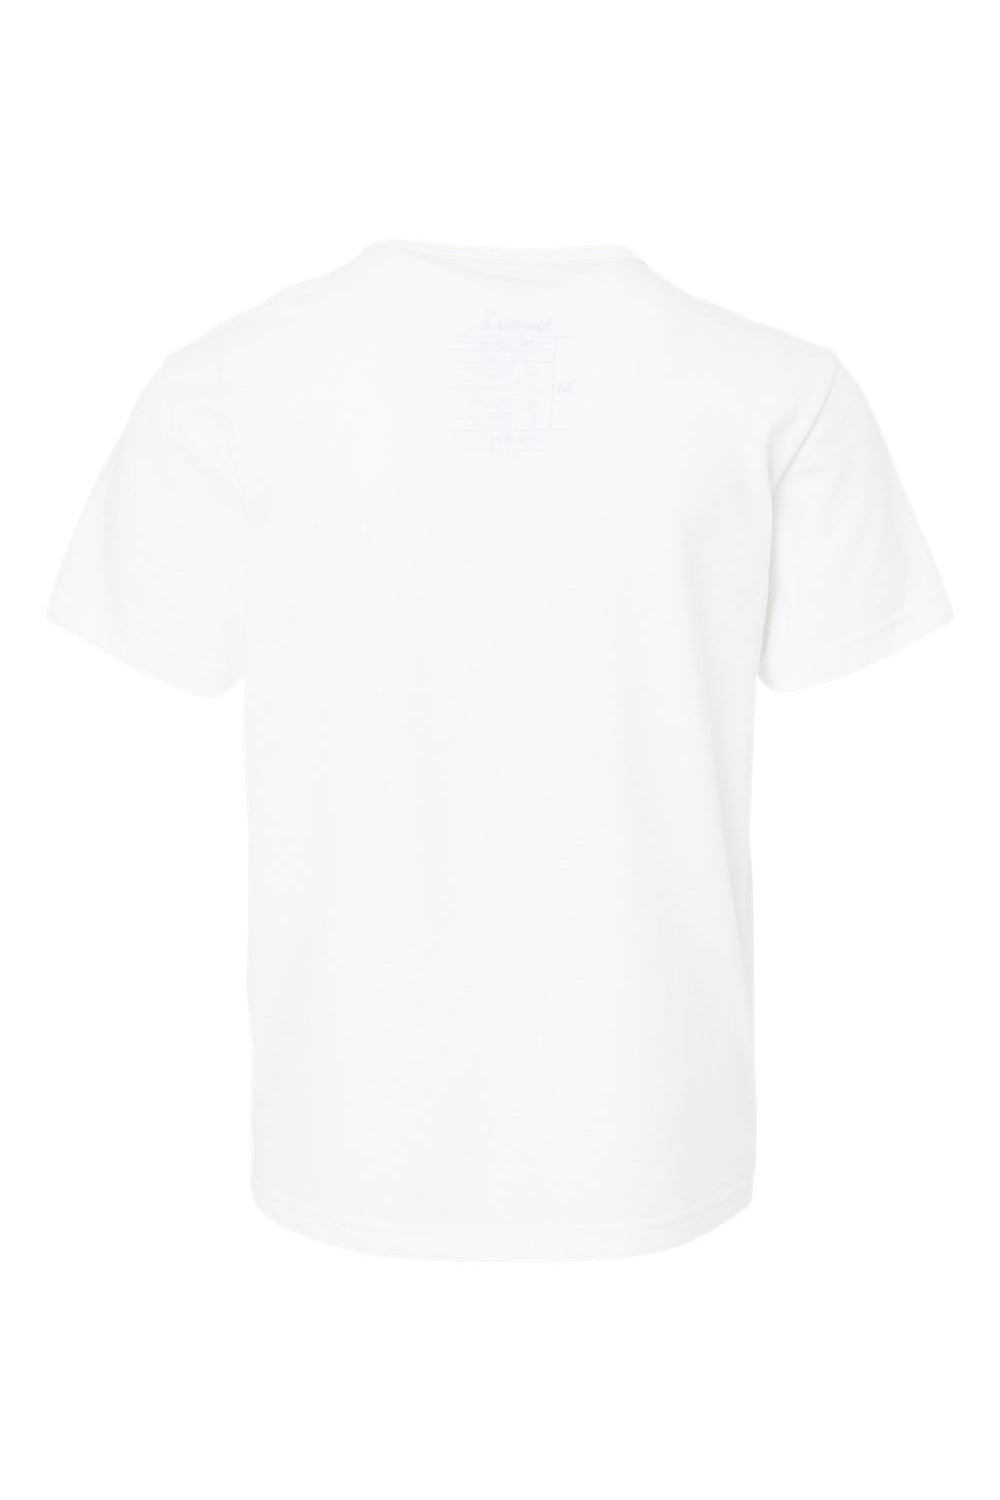 Kastlfel 2015 Youth RecycledSoft Short Sleeve Crewneck T-Shirt White Flat Back